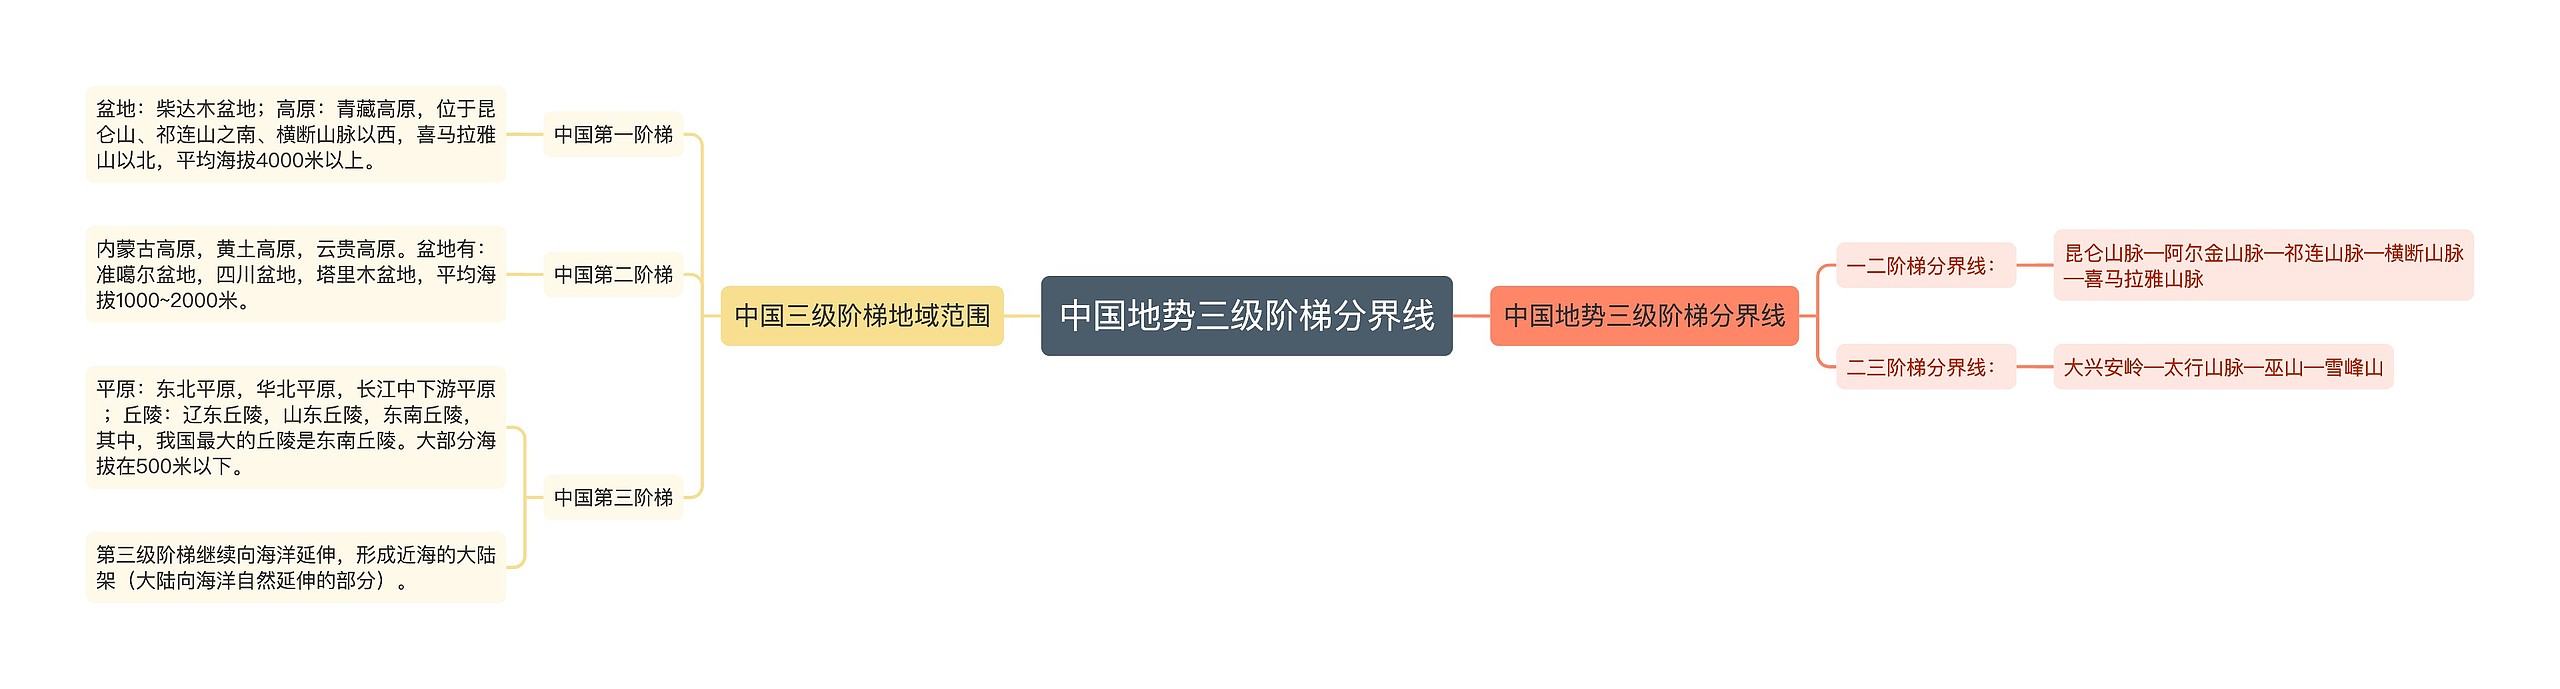 中国地势三级阶梯分界线思维导图